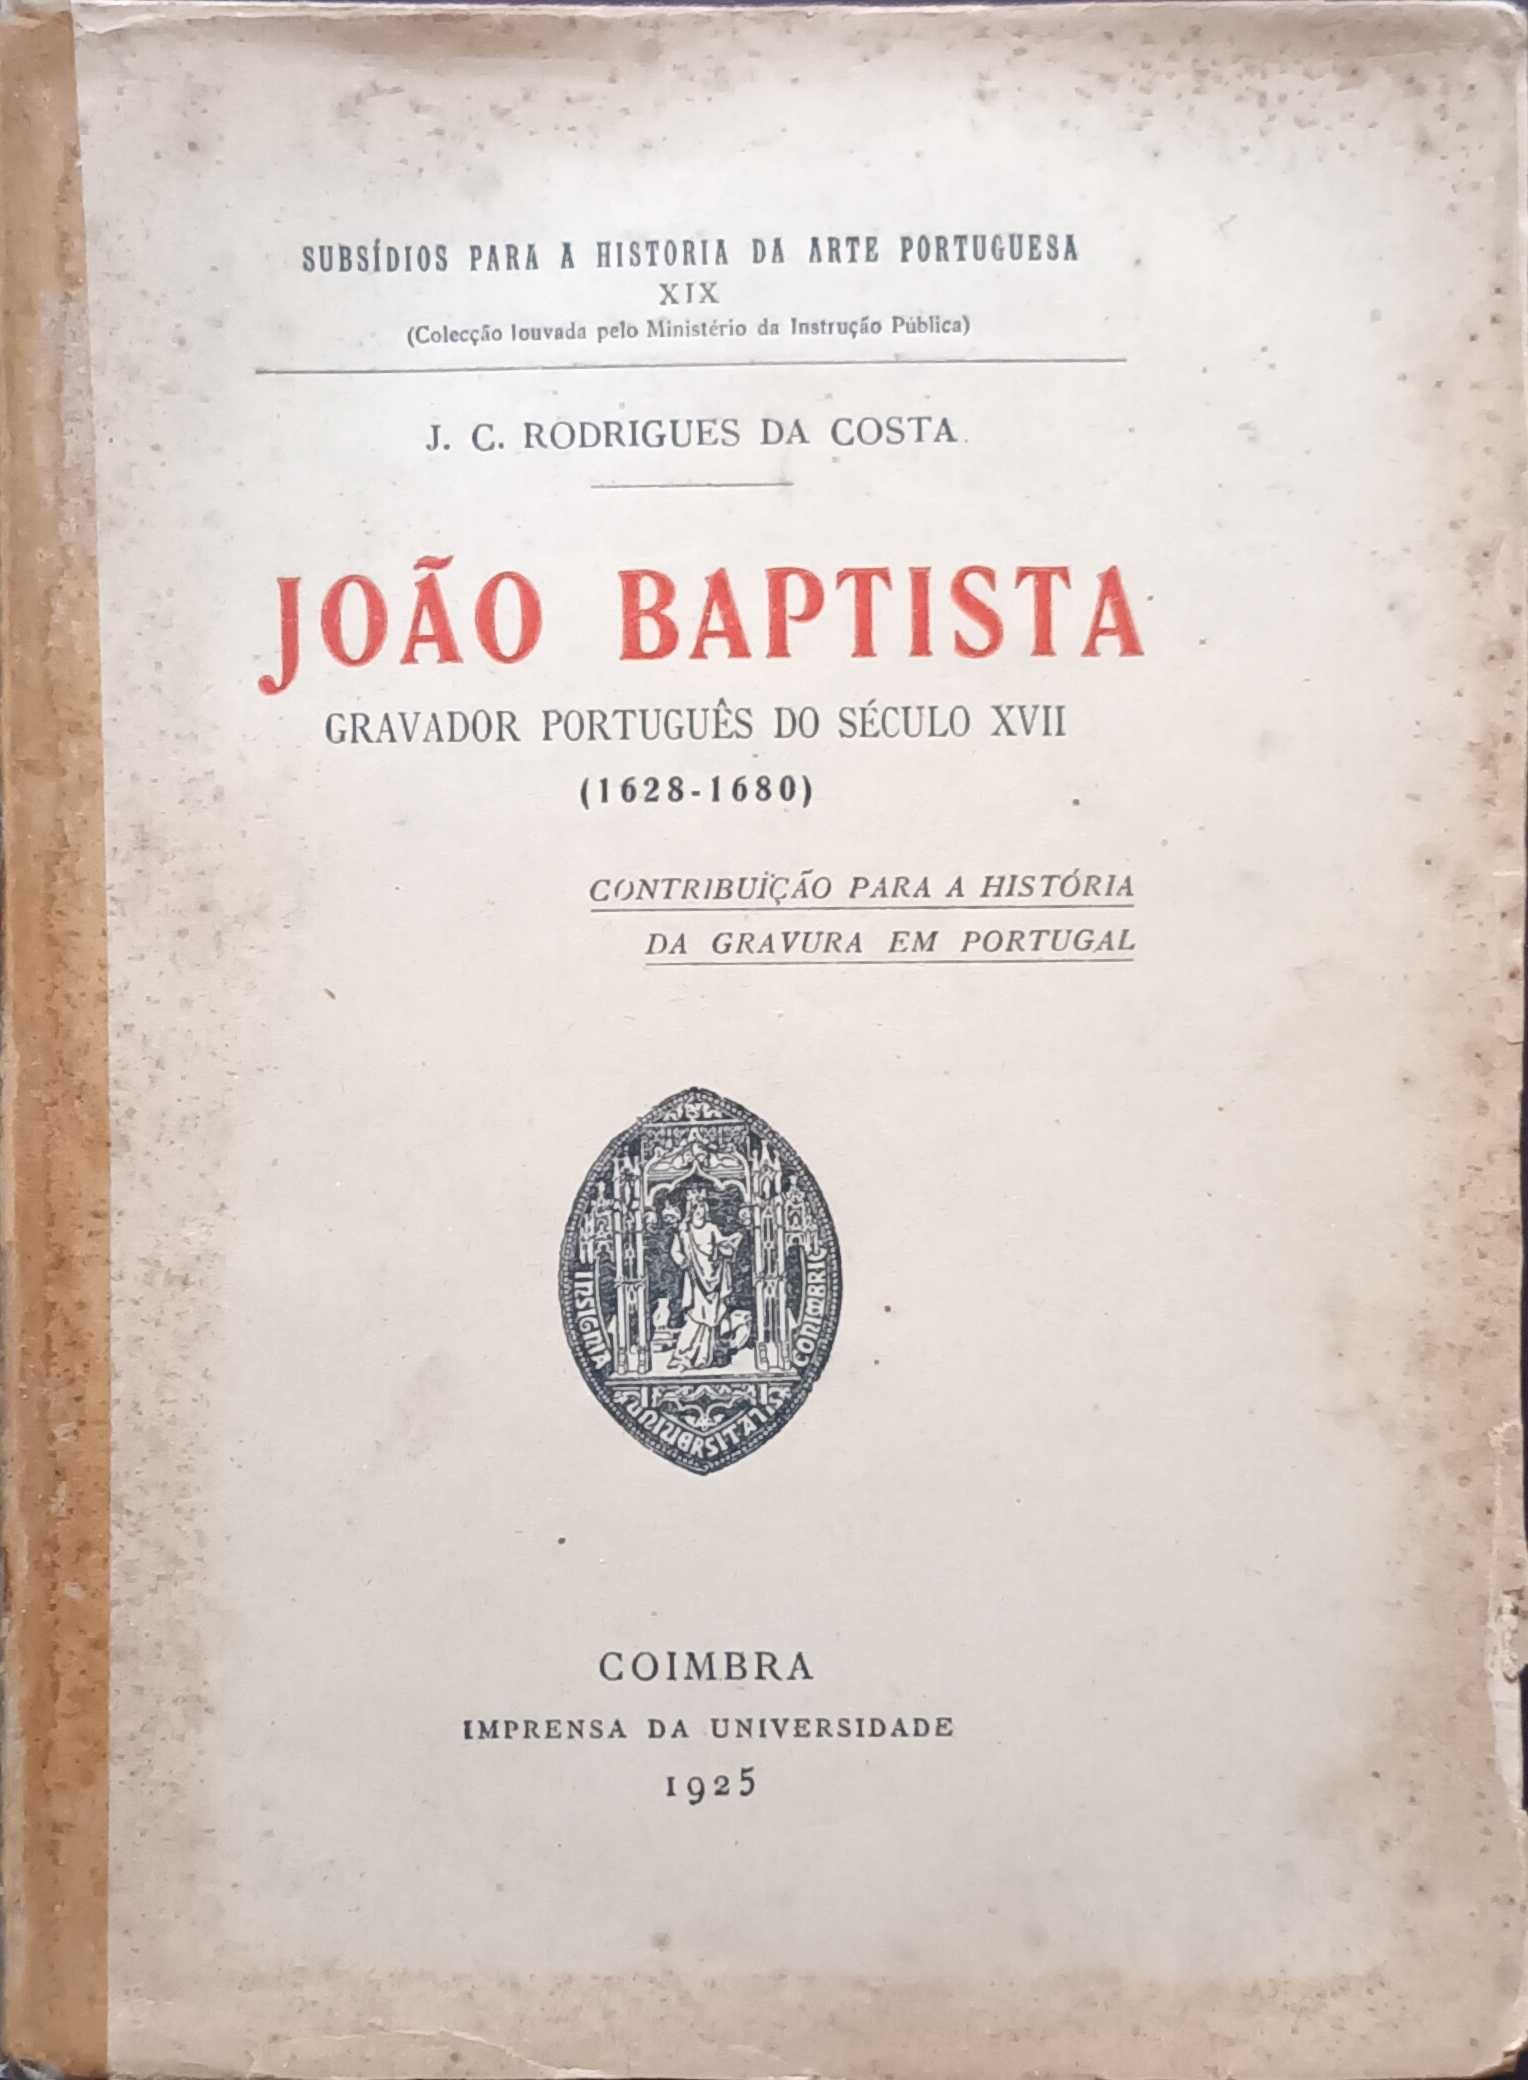 João Baptista gravador português do século XVII